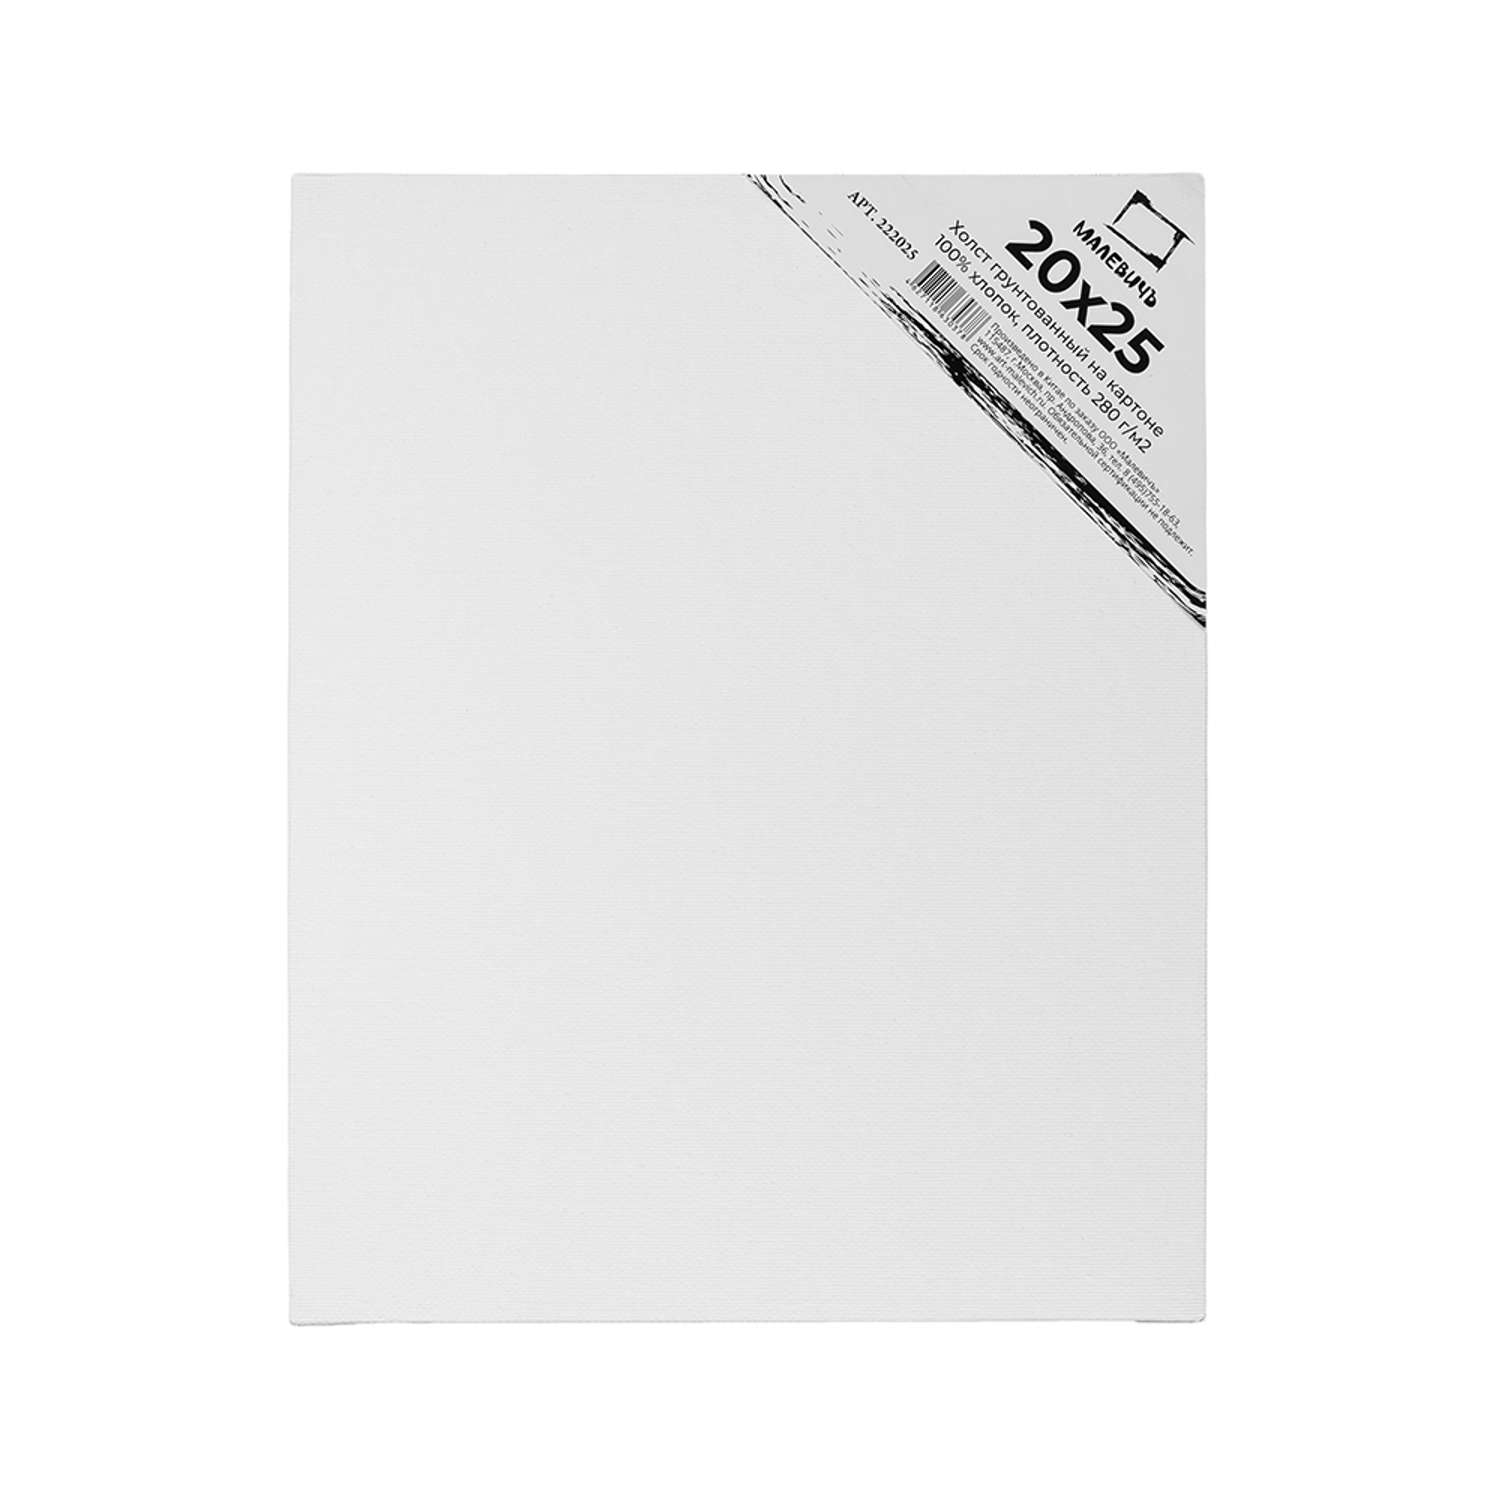 Холст Малевичъ на картоне 20x25 см набор 5 шт - фото 4